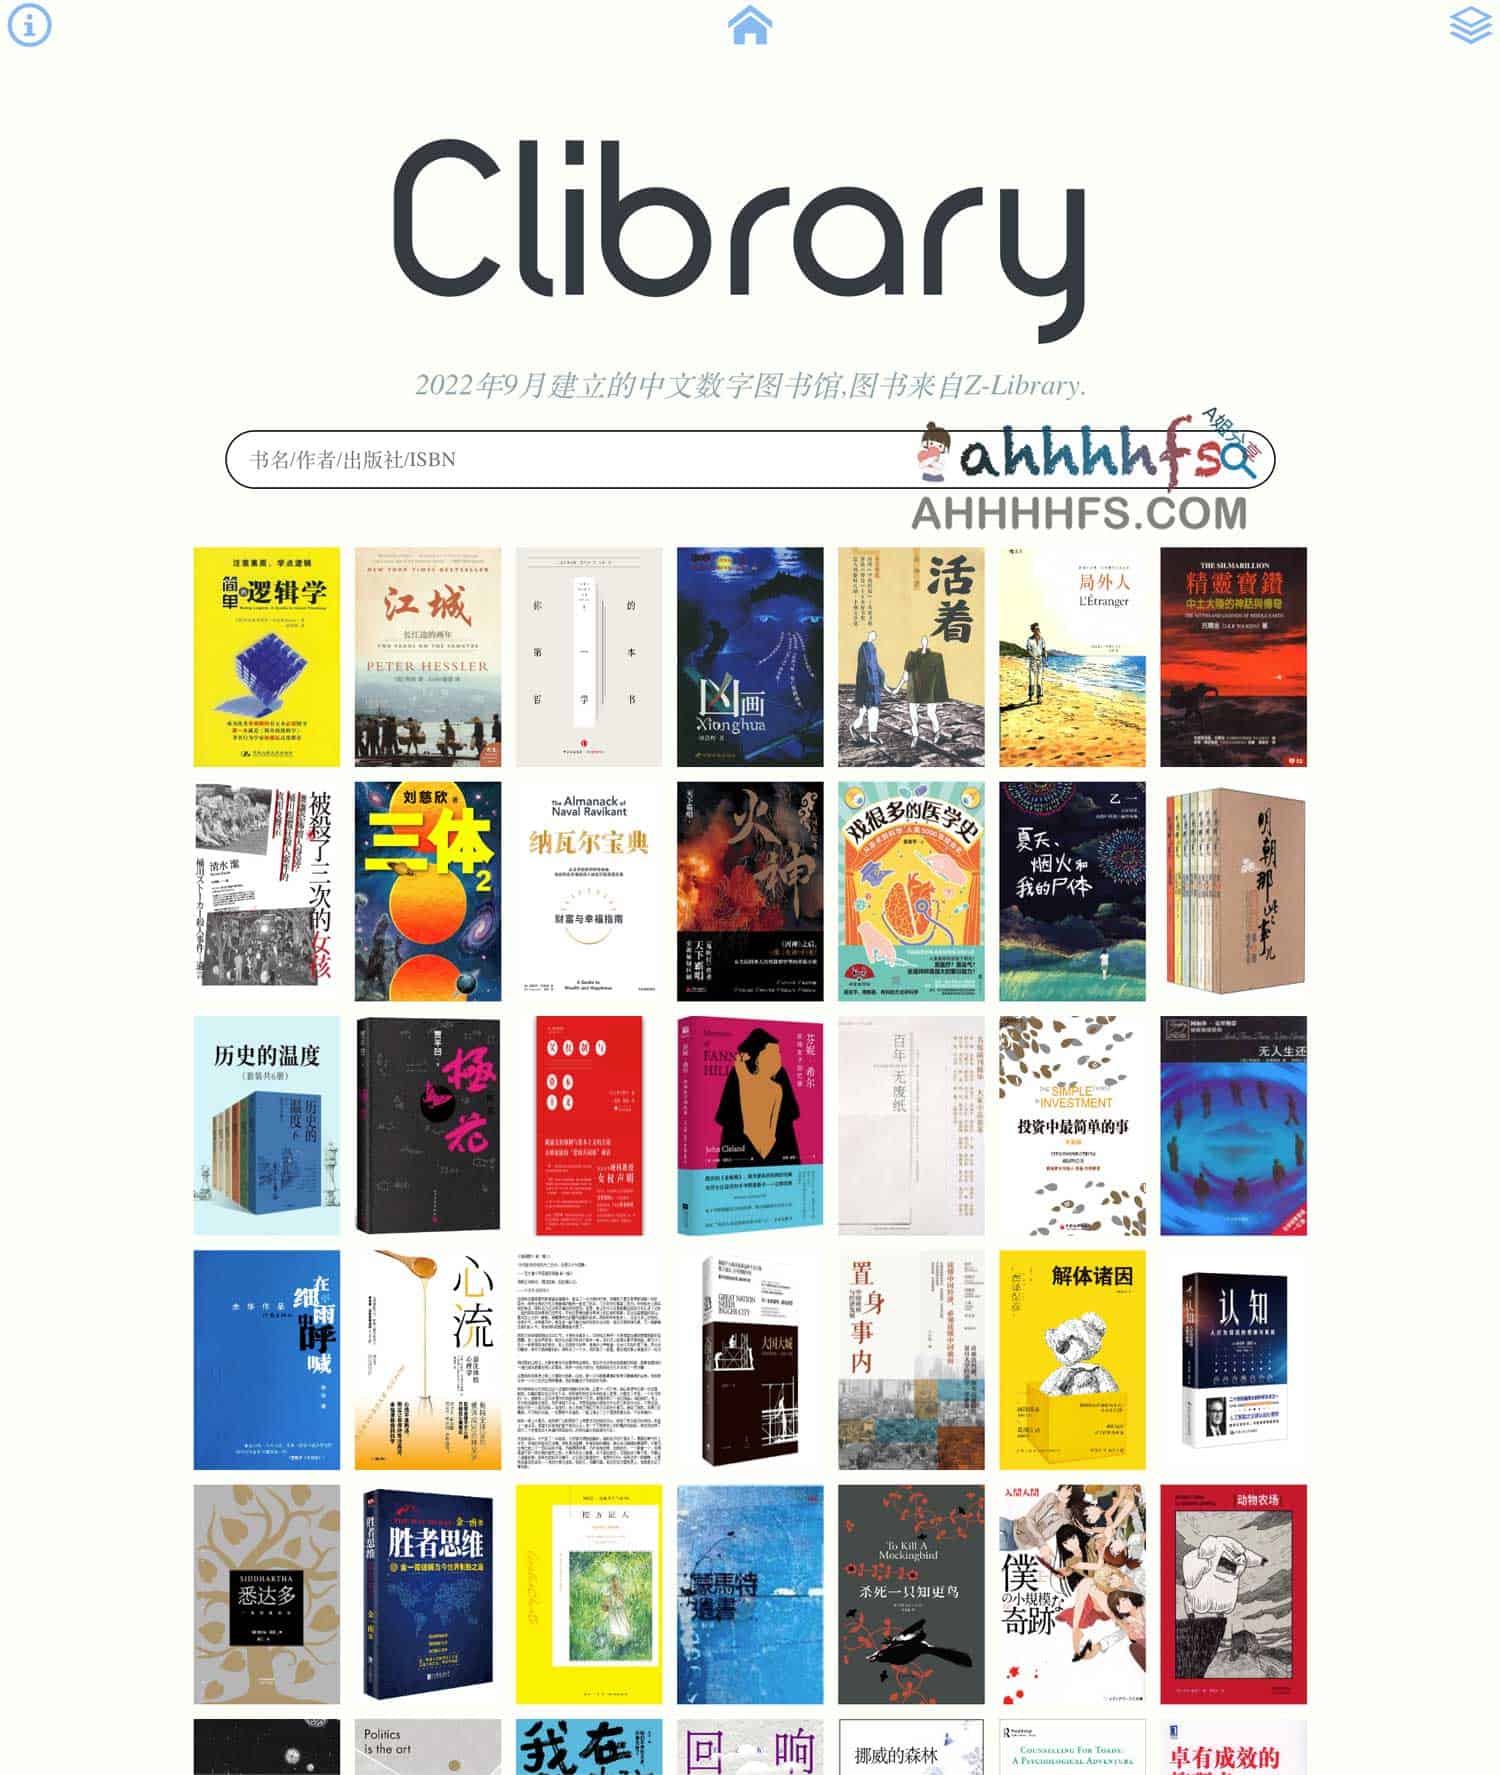 免费电子书下载网站-Clibrary图书馆